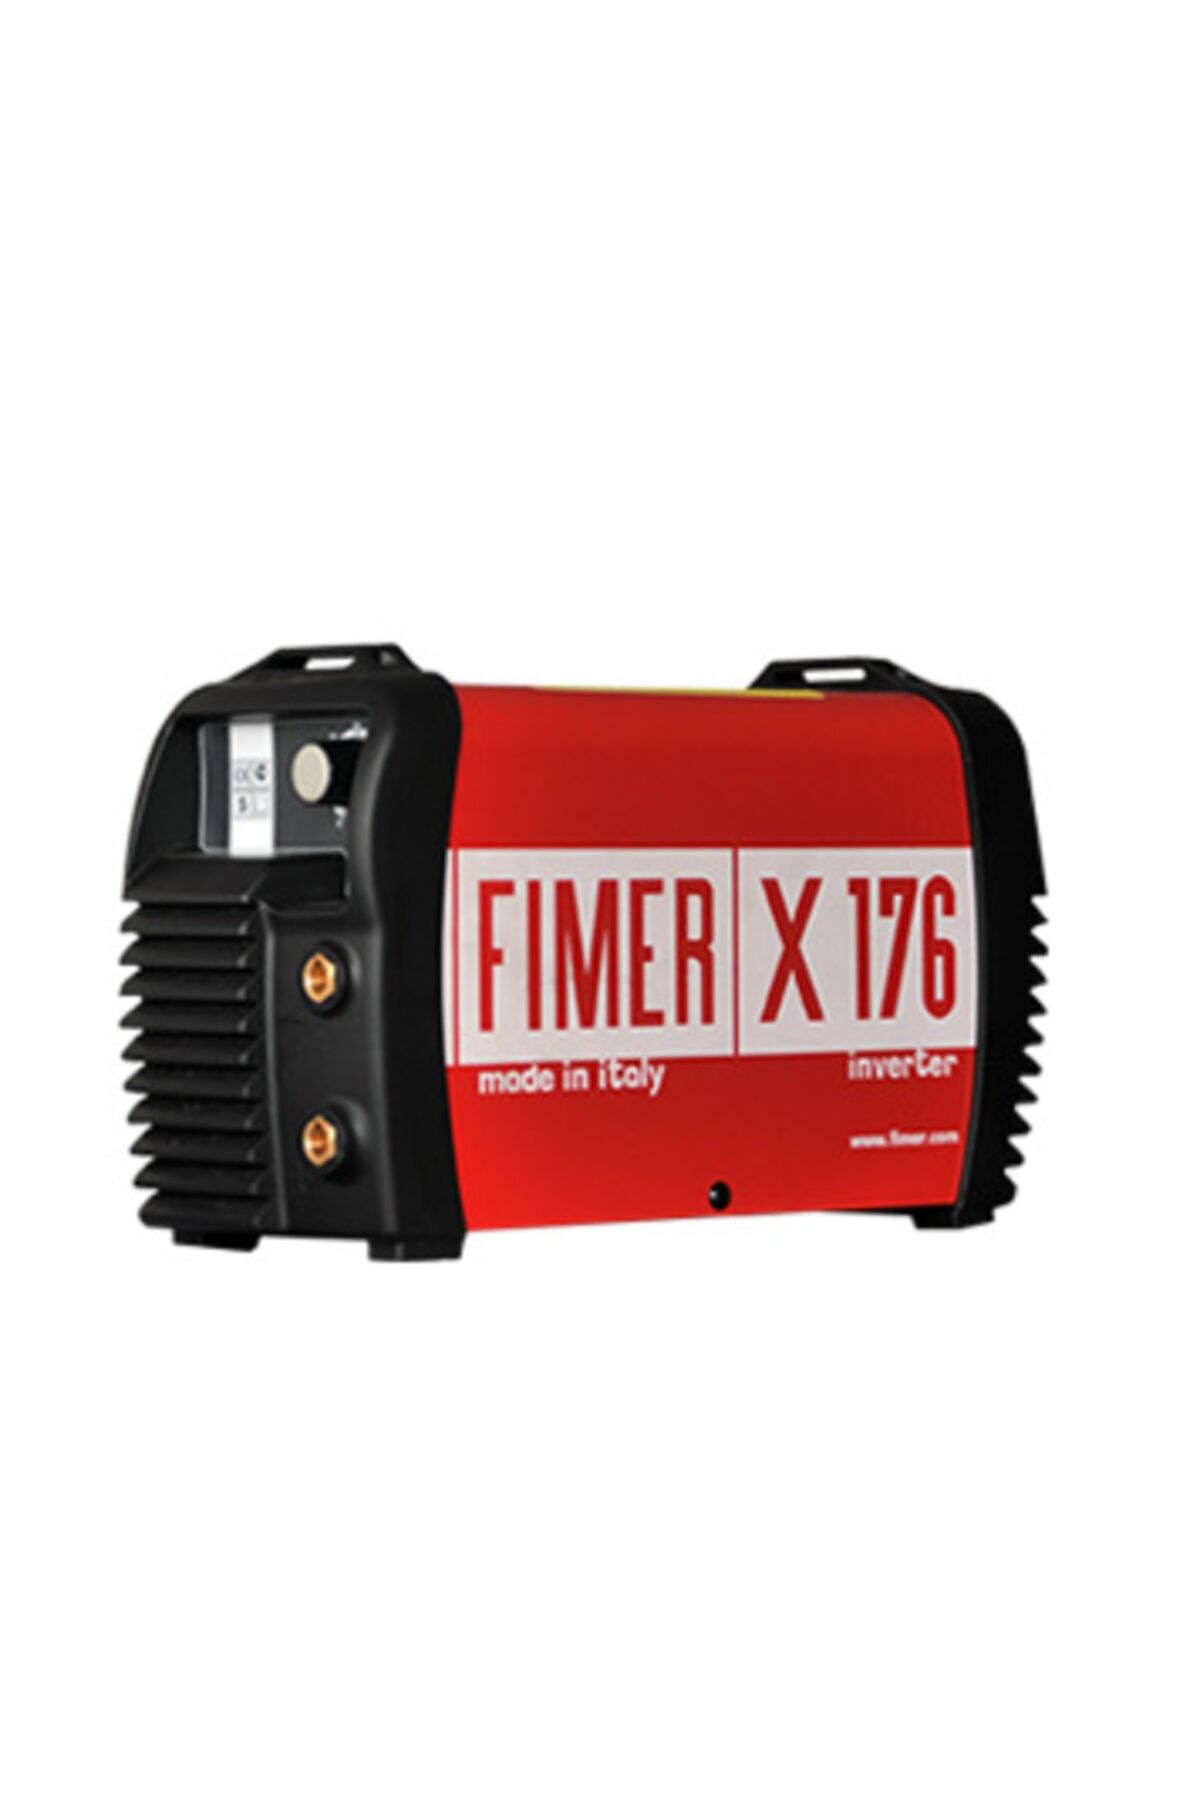 Fimer X176 Inverter Kaynak Makinesi 160 Amper